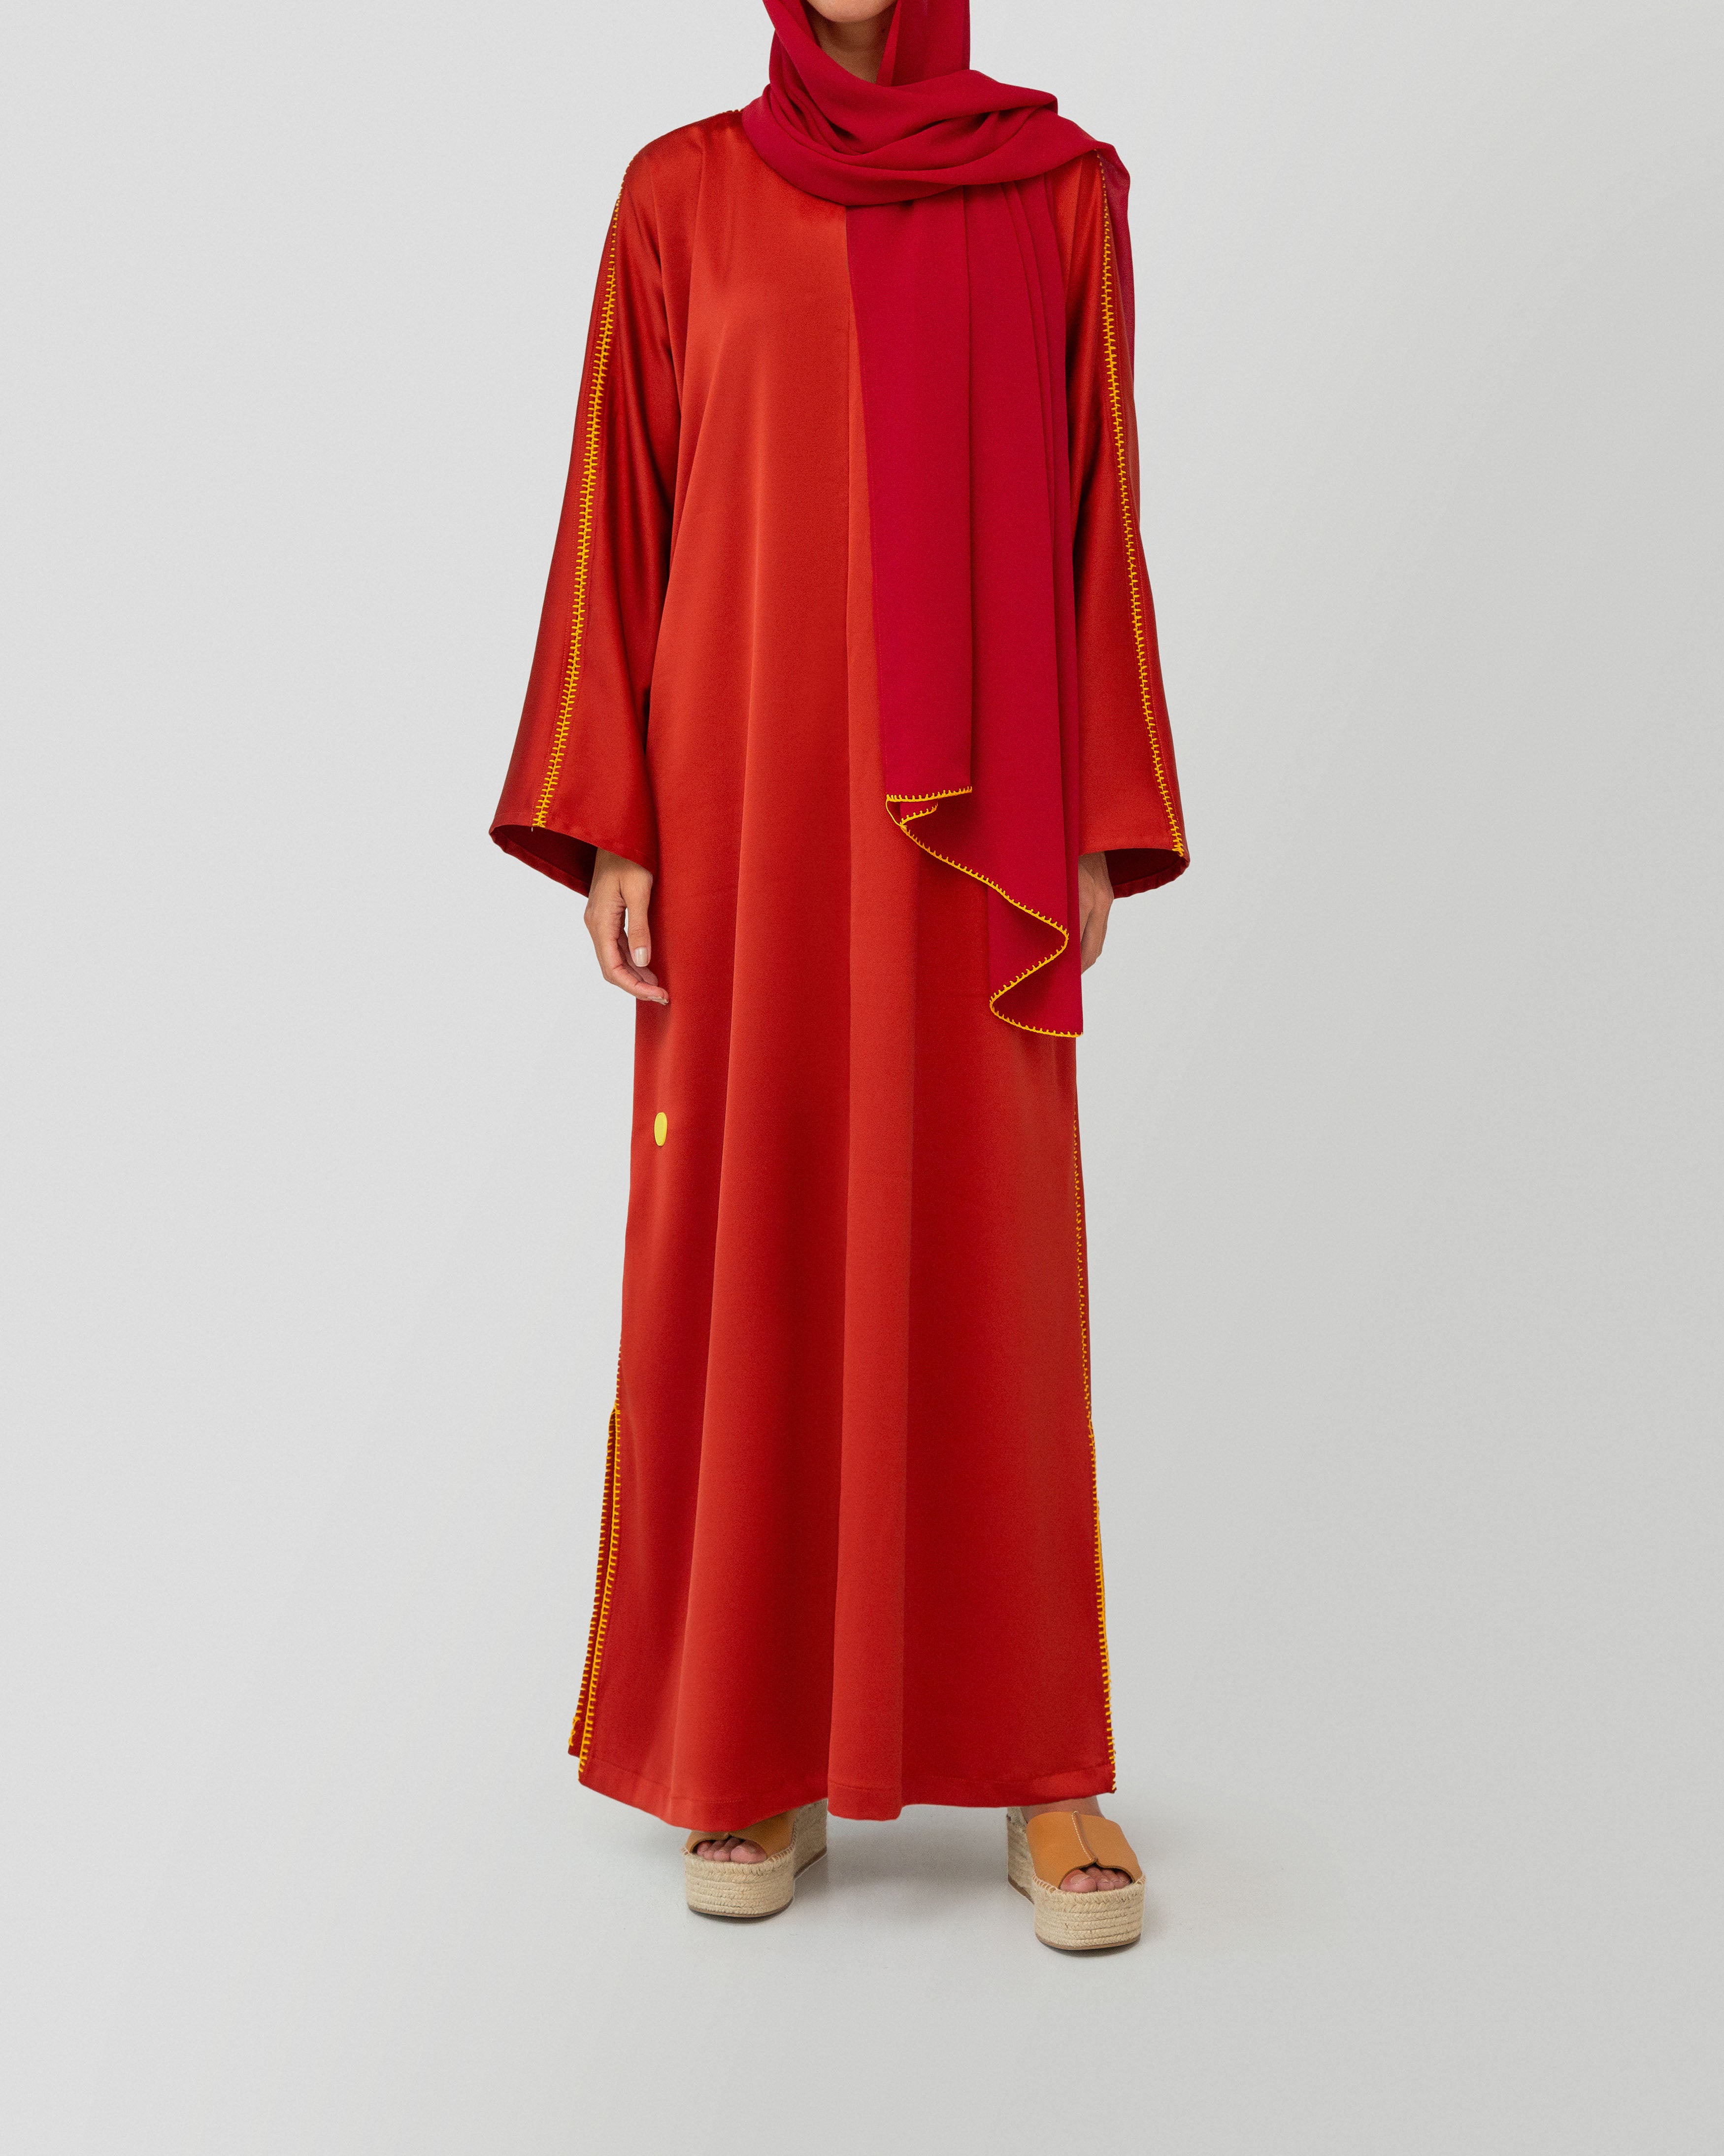 Aya Dress in Crimson